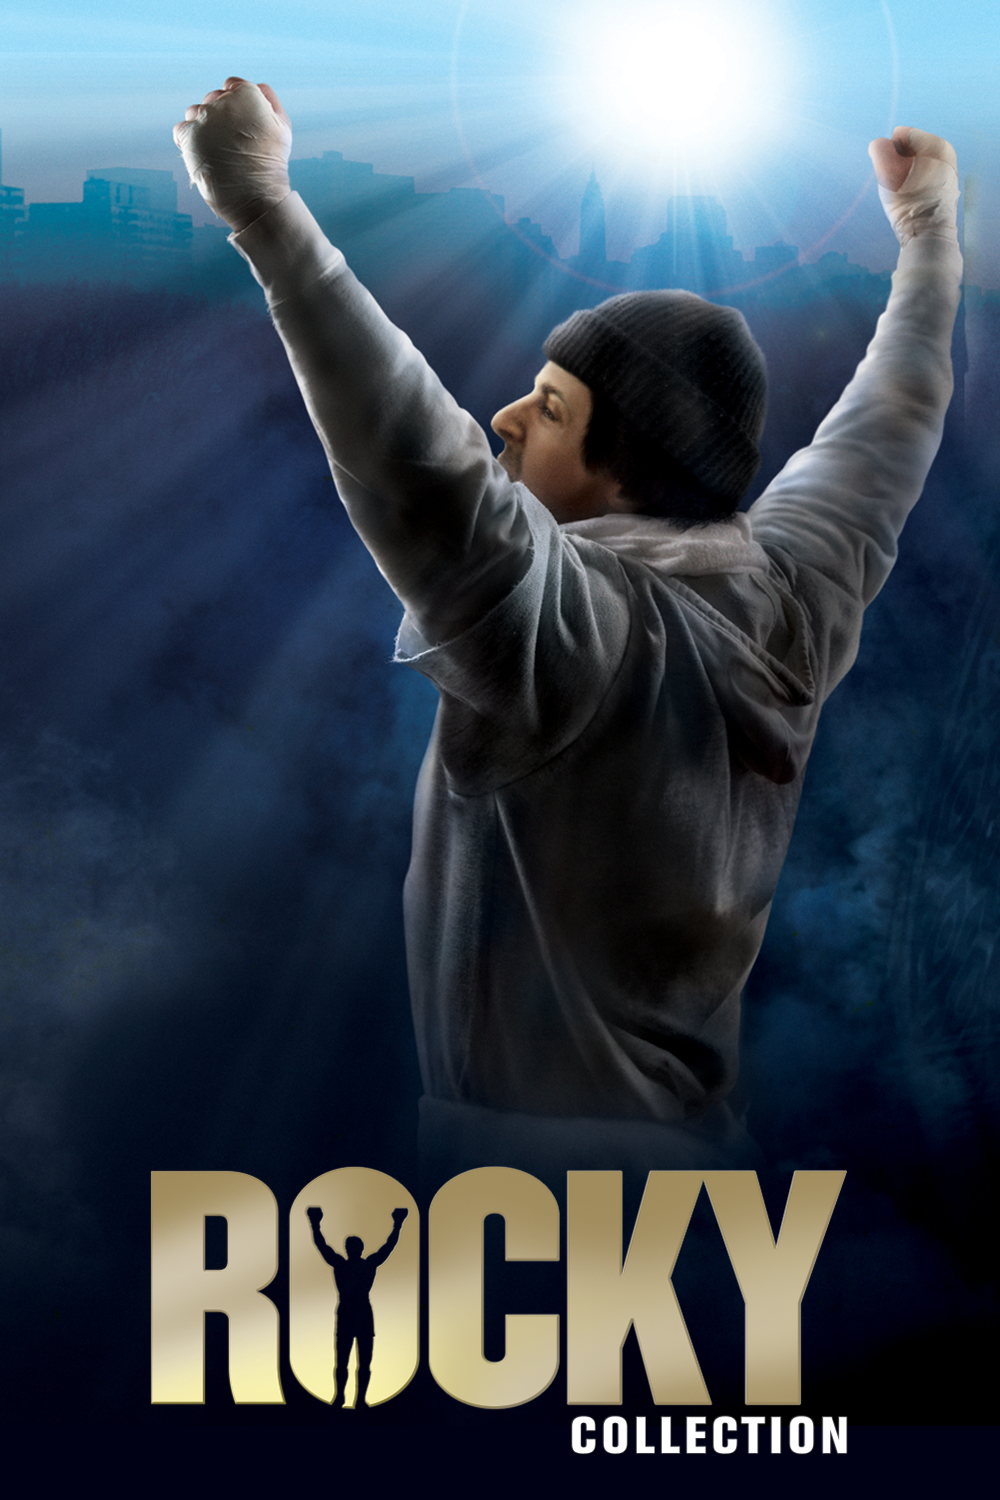 دانلود کالکشن فیلم راکی Rocky